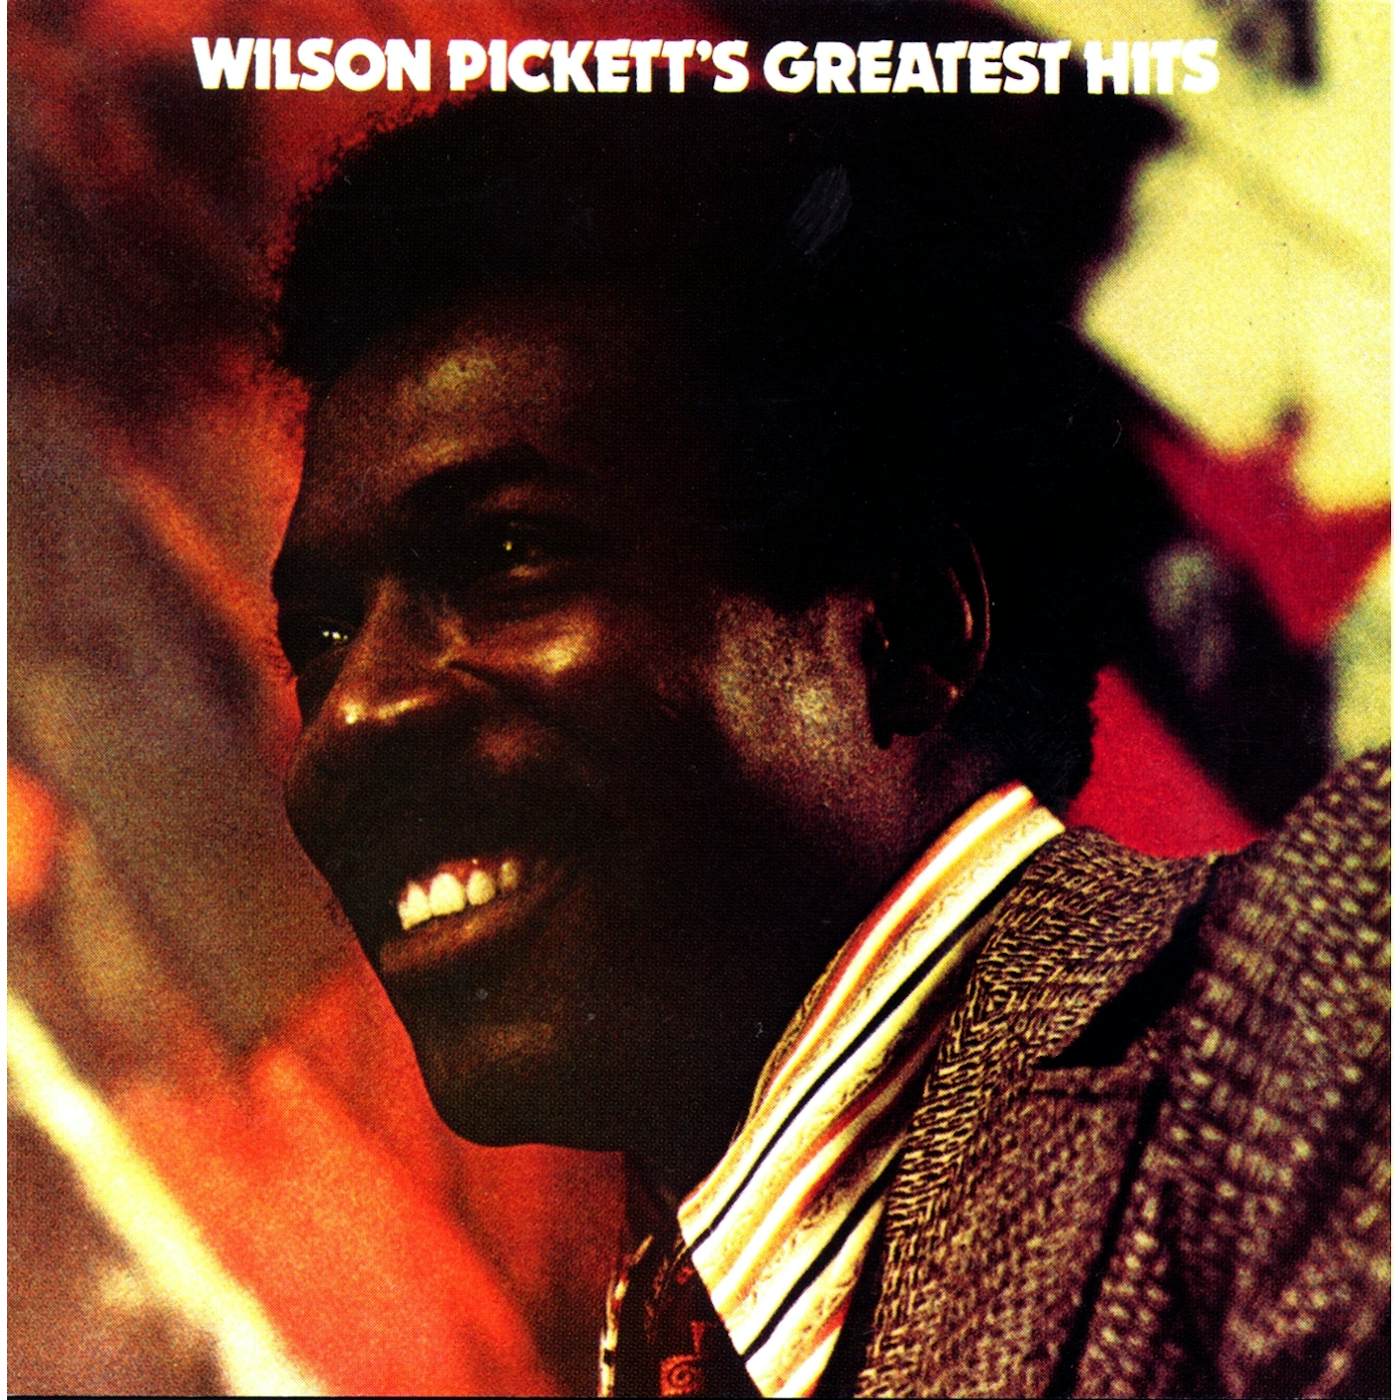 Wilson Pickett Greatest Hits